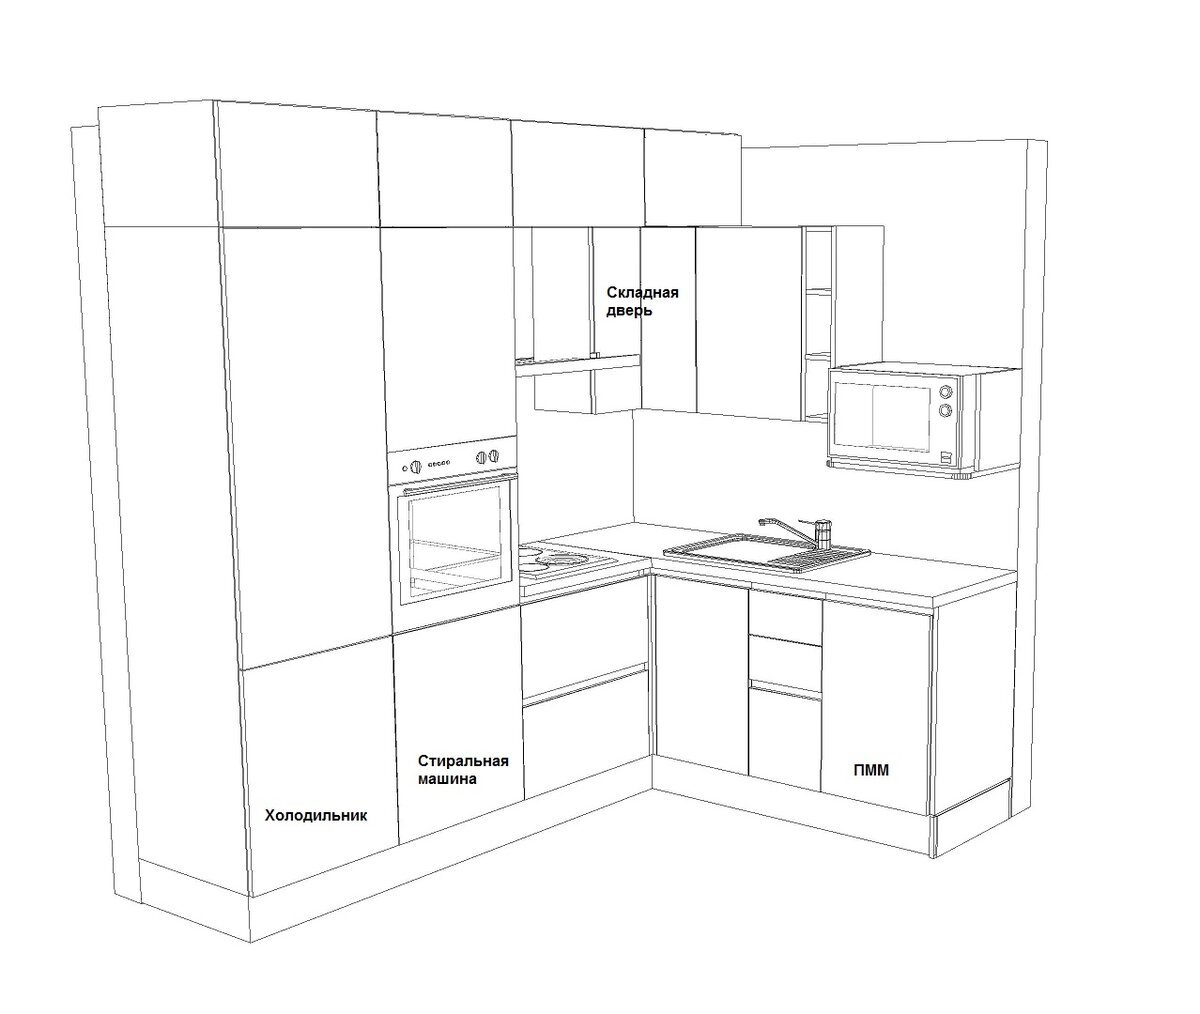 Кухня 3300 мм по прямой и холодильник по другой стене сбоку чертеж